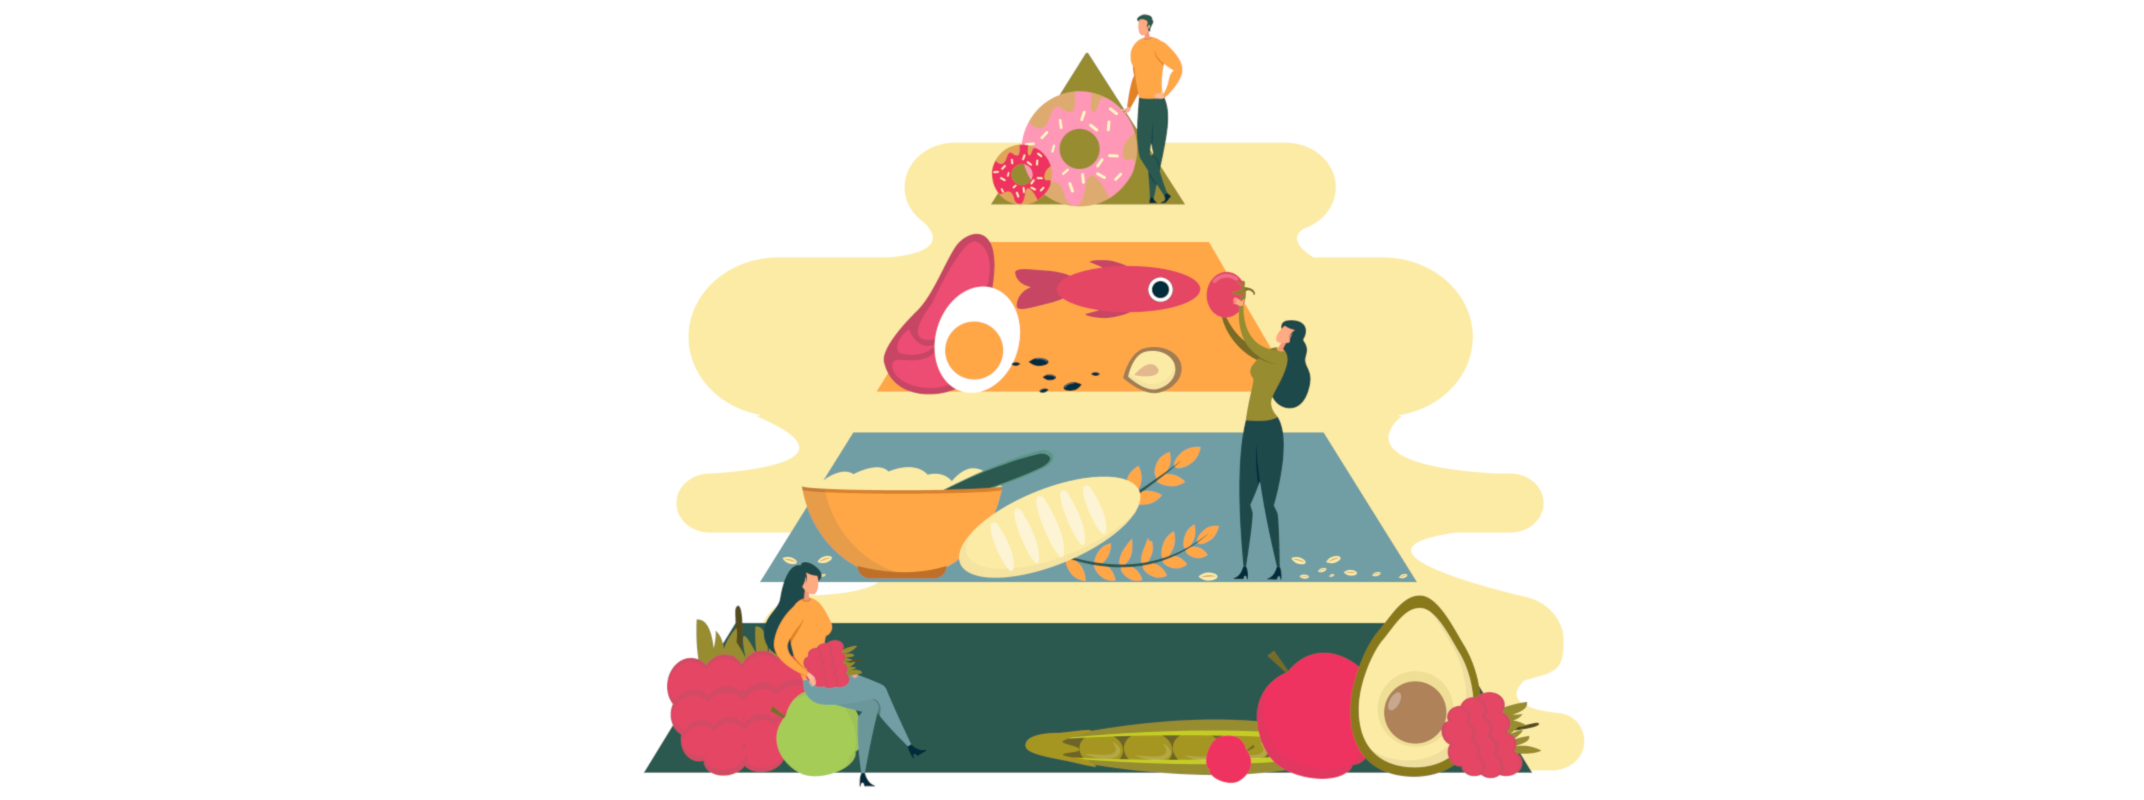 Eine Ernährungspyramide zeigt gesunde Ernährung bei Hyperglykämie